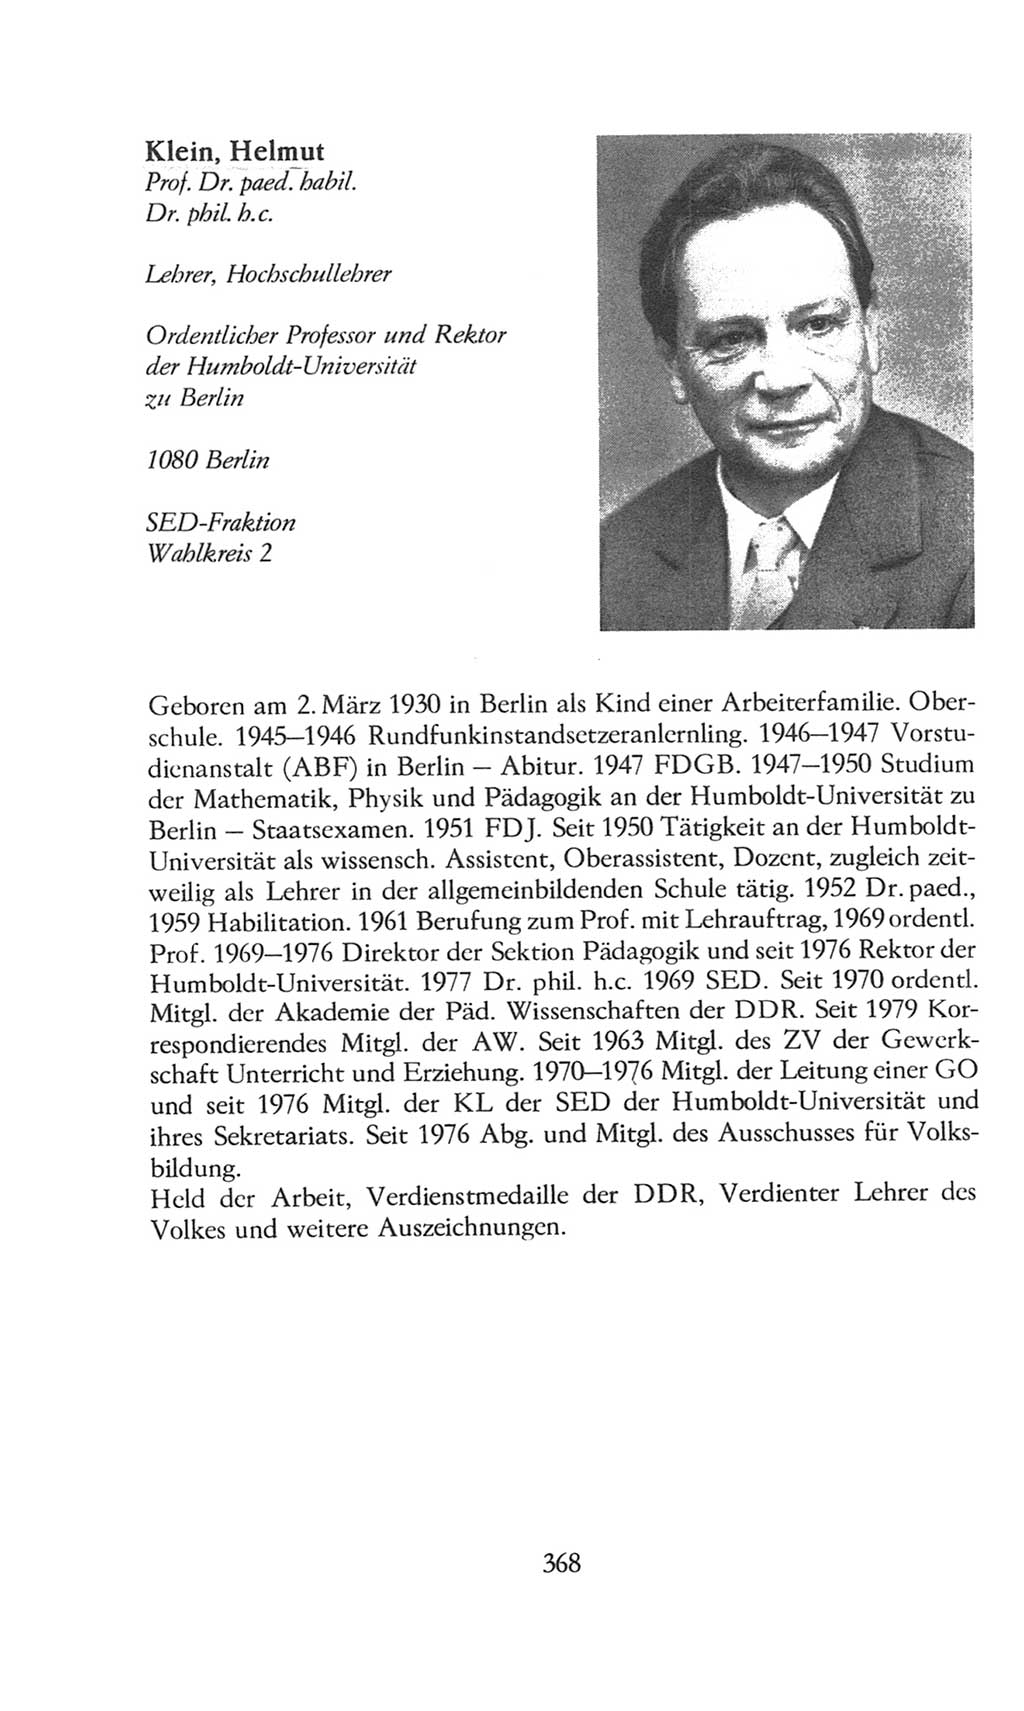 Volkskammer (VK) der Deutschen Demokratischen Republik (DDR), 8. Wahlperiode 1981-1986, Seite 368 (VK. DDR 8. WP. 1981-1986, S. 368)